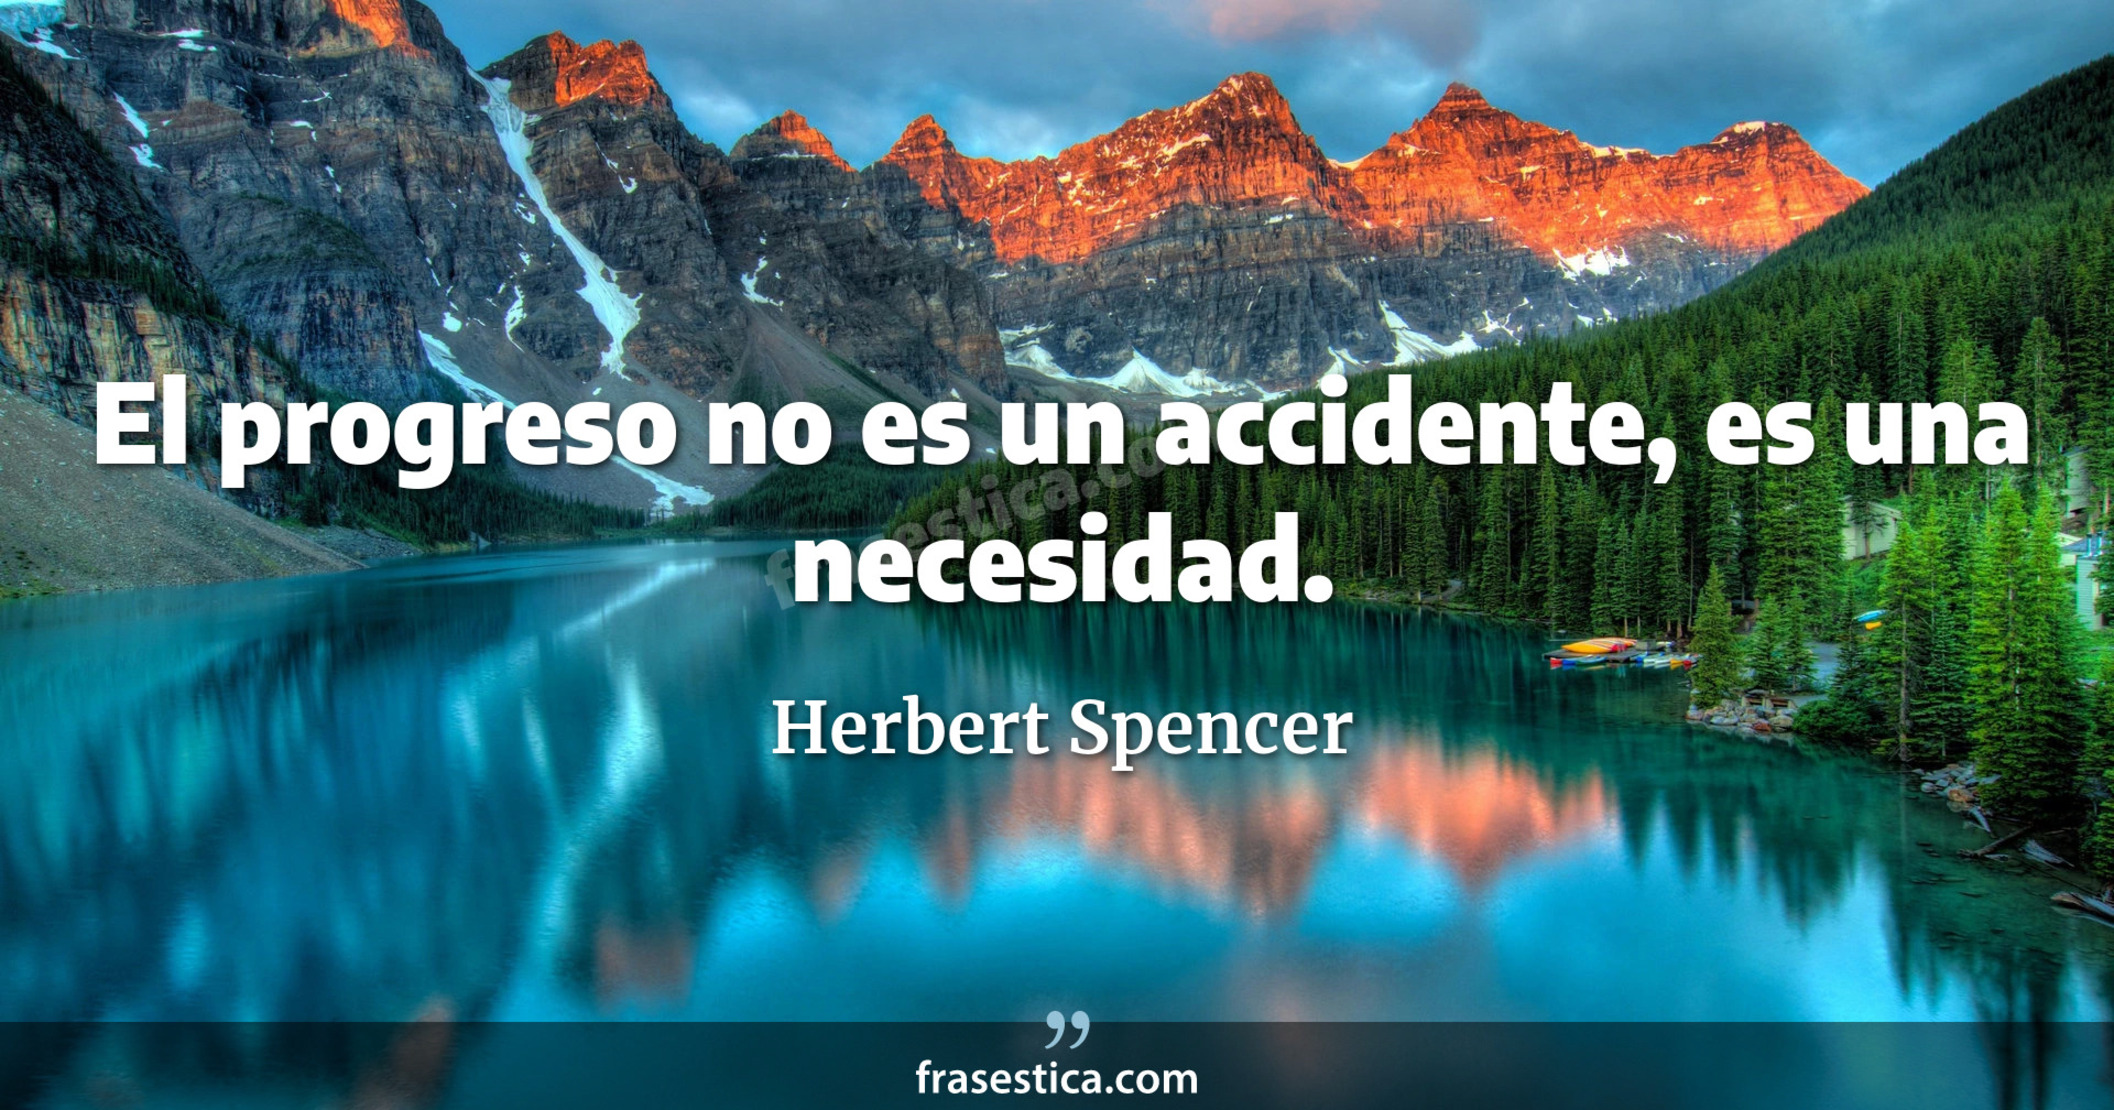 El progreso no es un accidente, es una necesidad. - Herbert Spencer